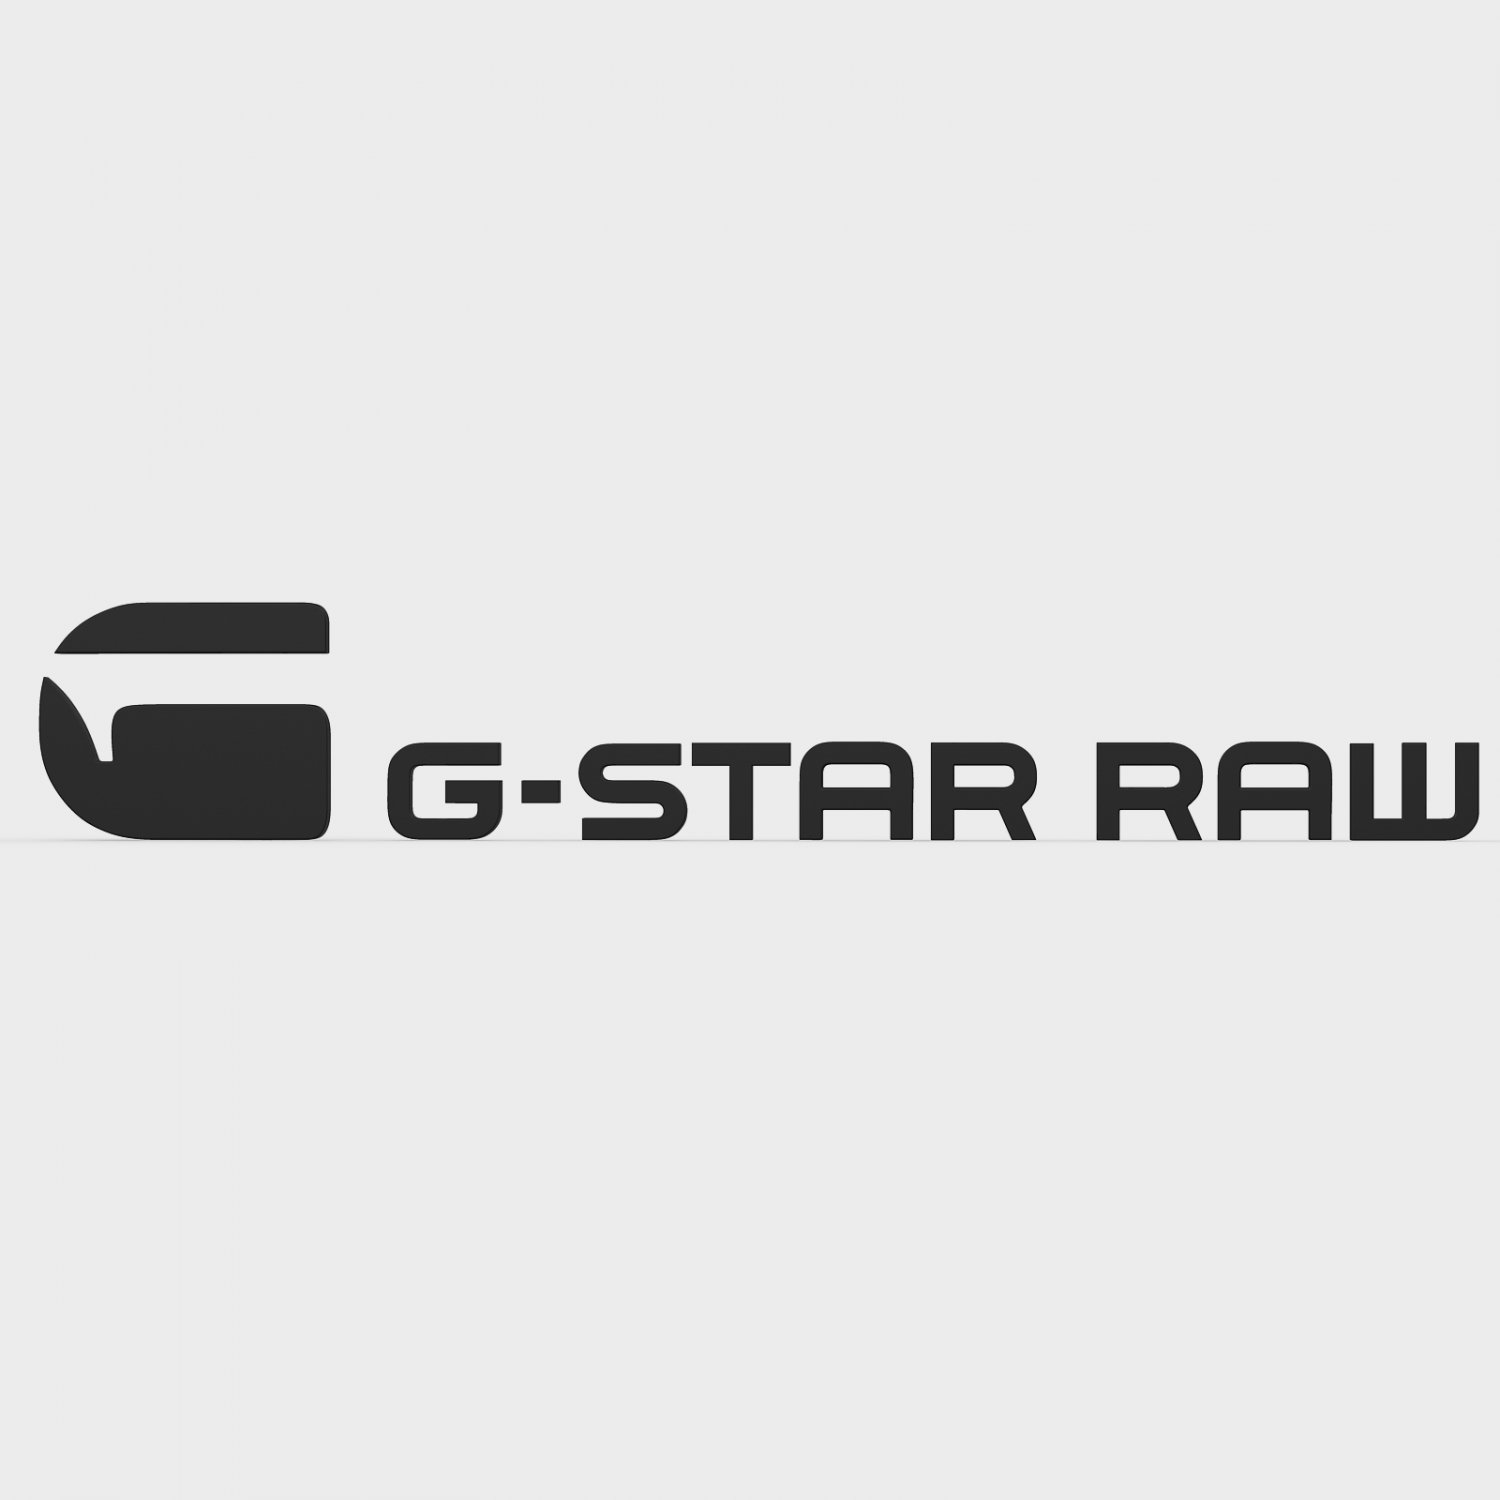 G-star raw logo 3Dモデル in 服 3DExport